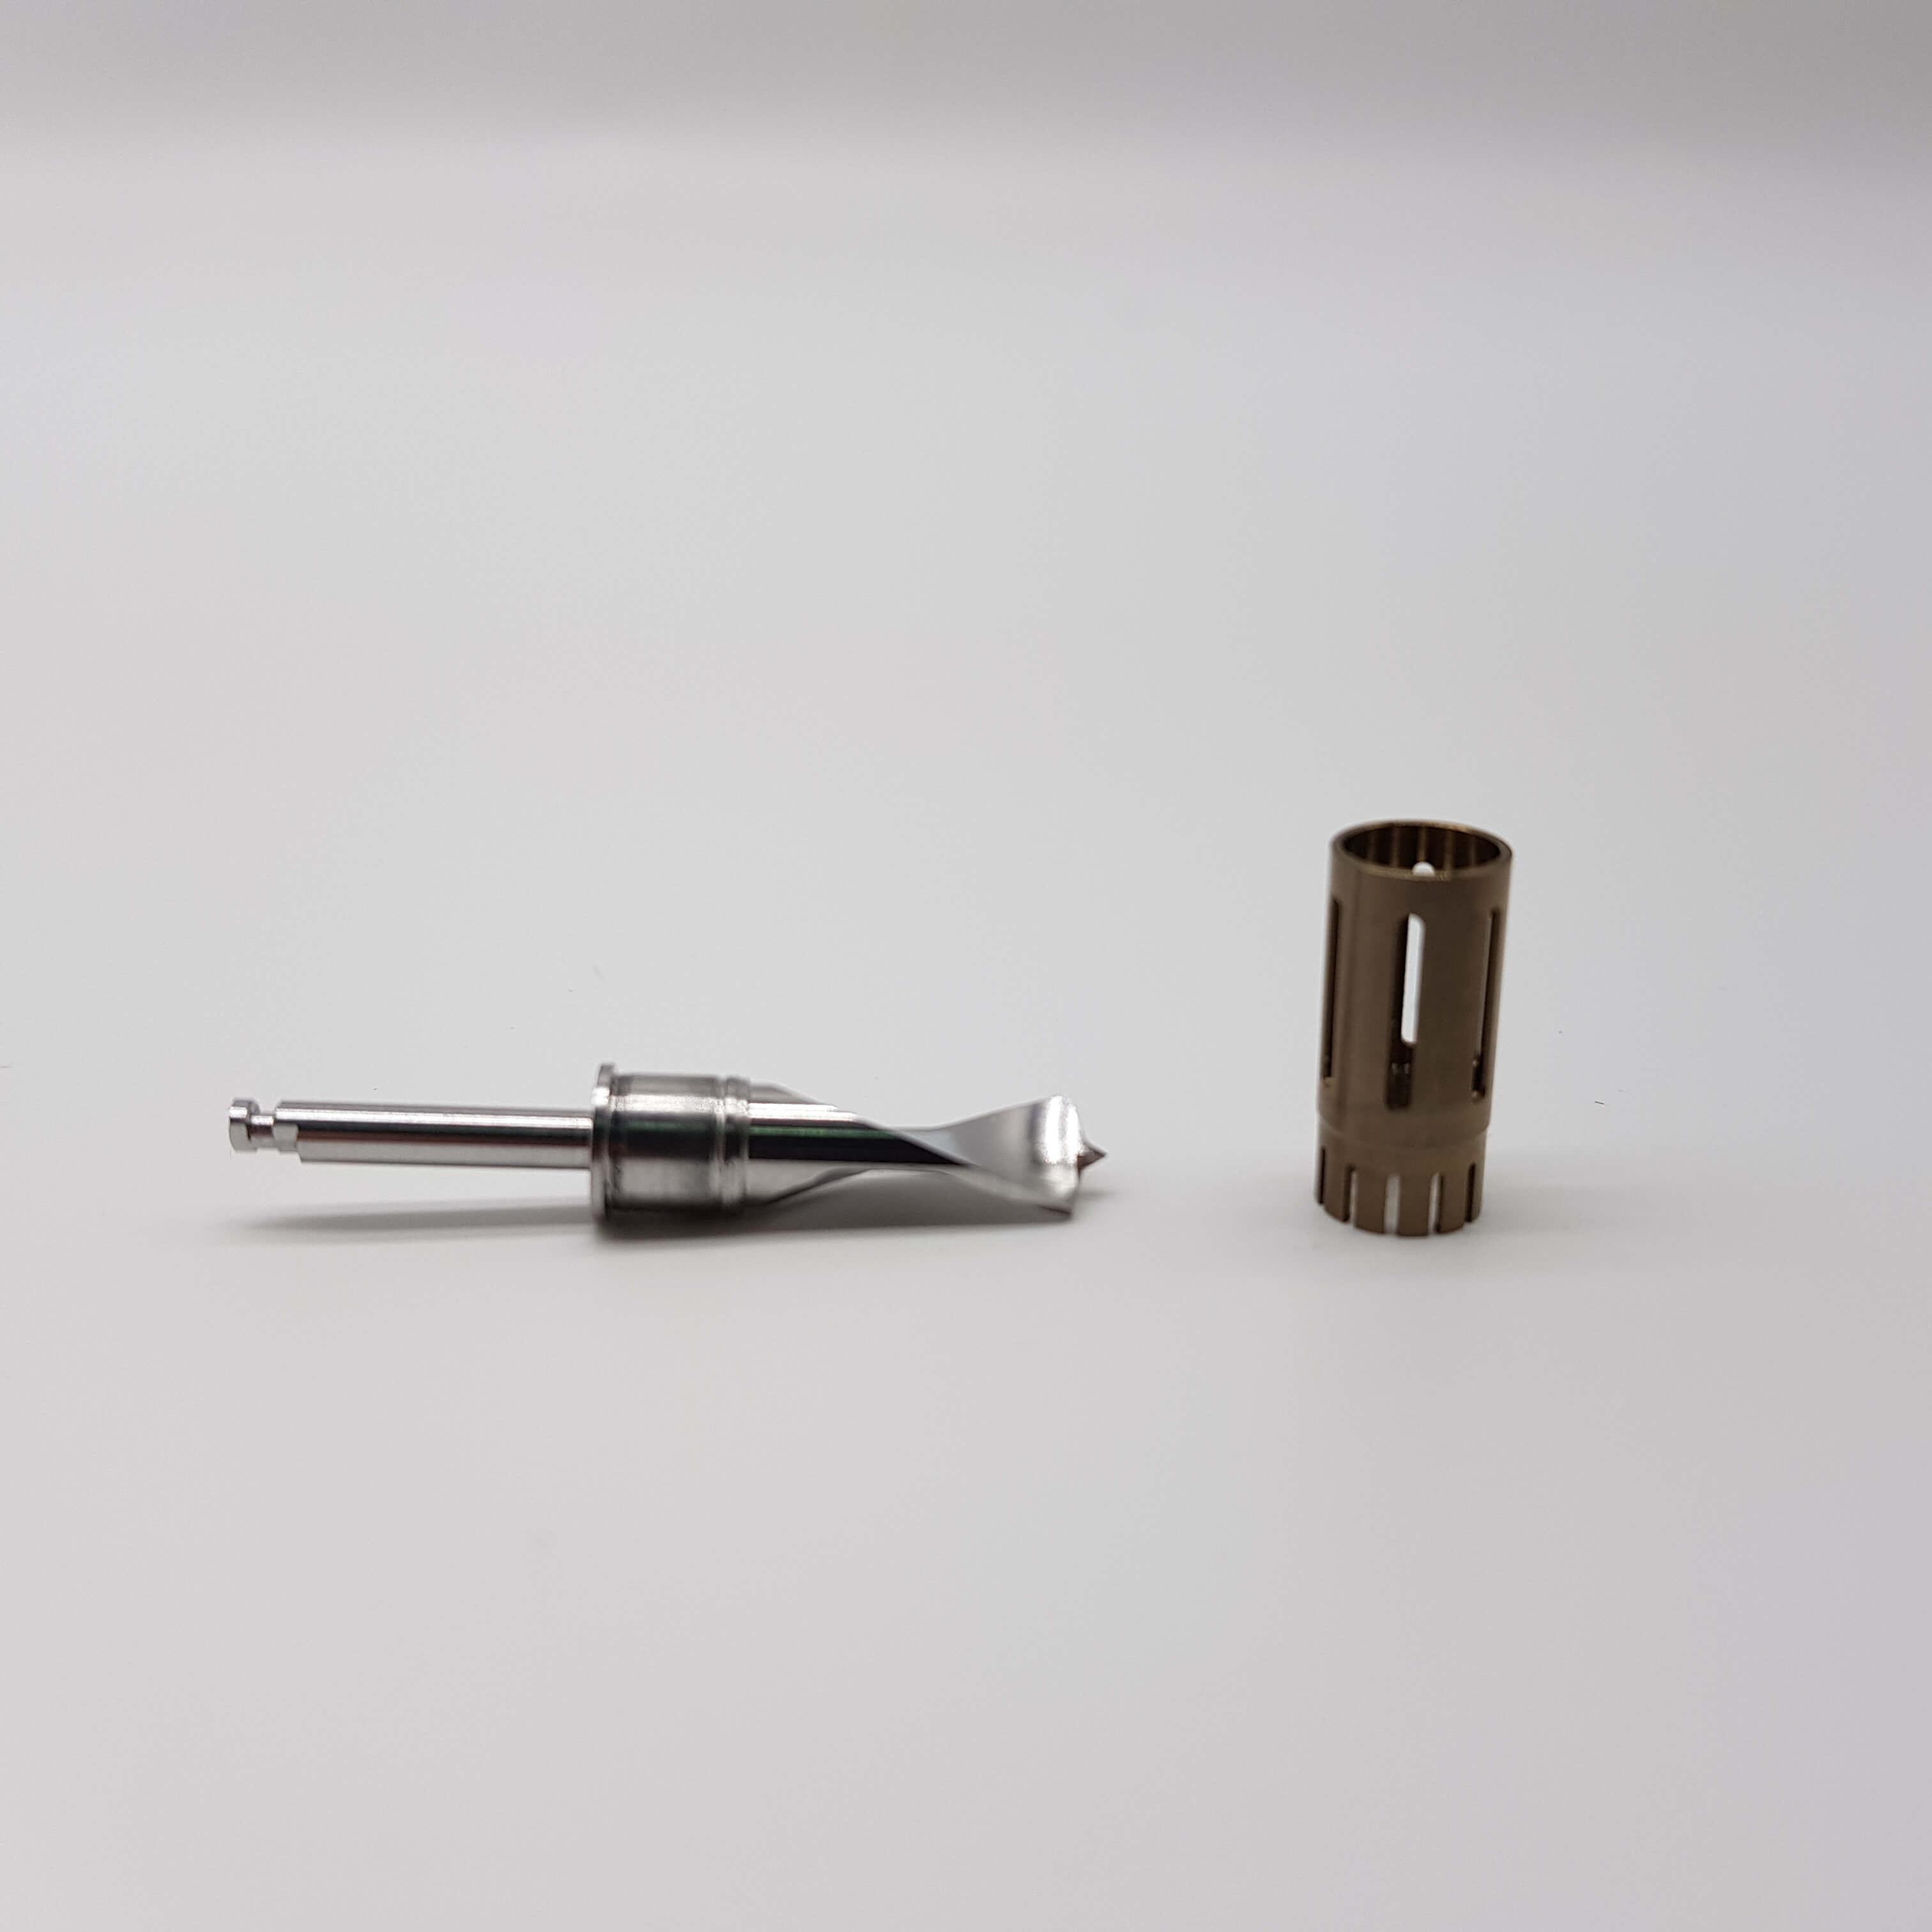 Сверло для забора аутокости короткое с ограничителем, диаметр 5 мм.